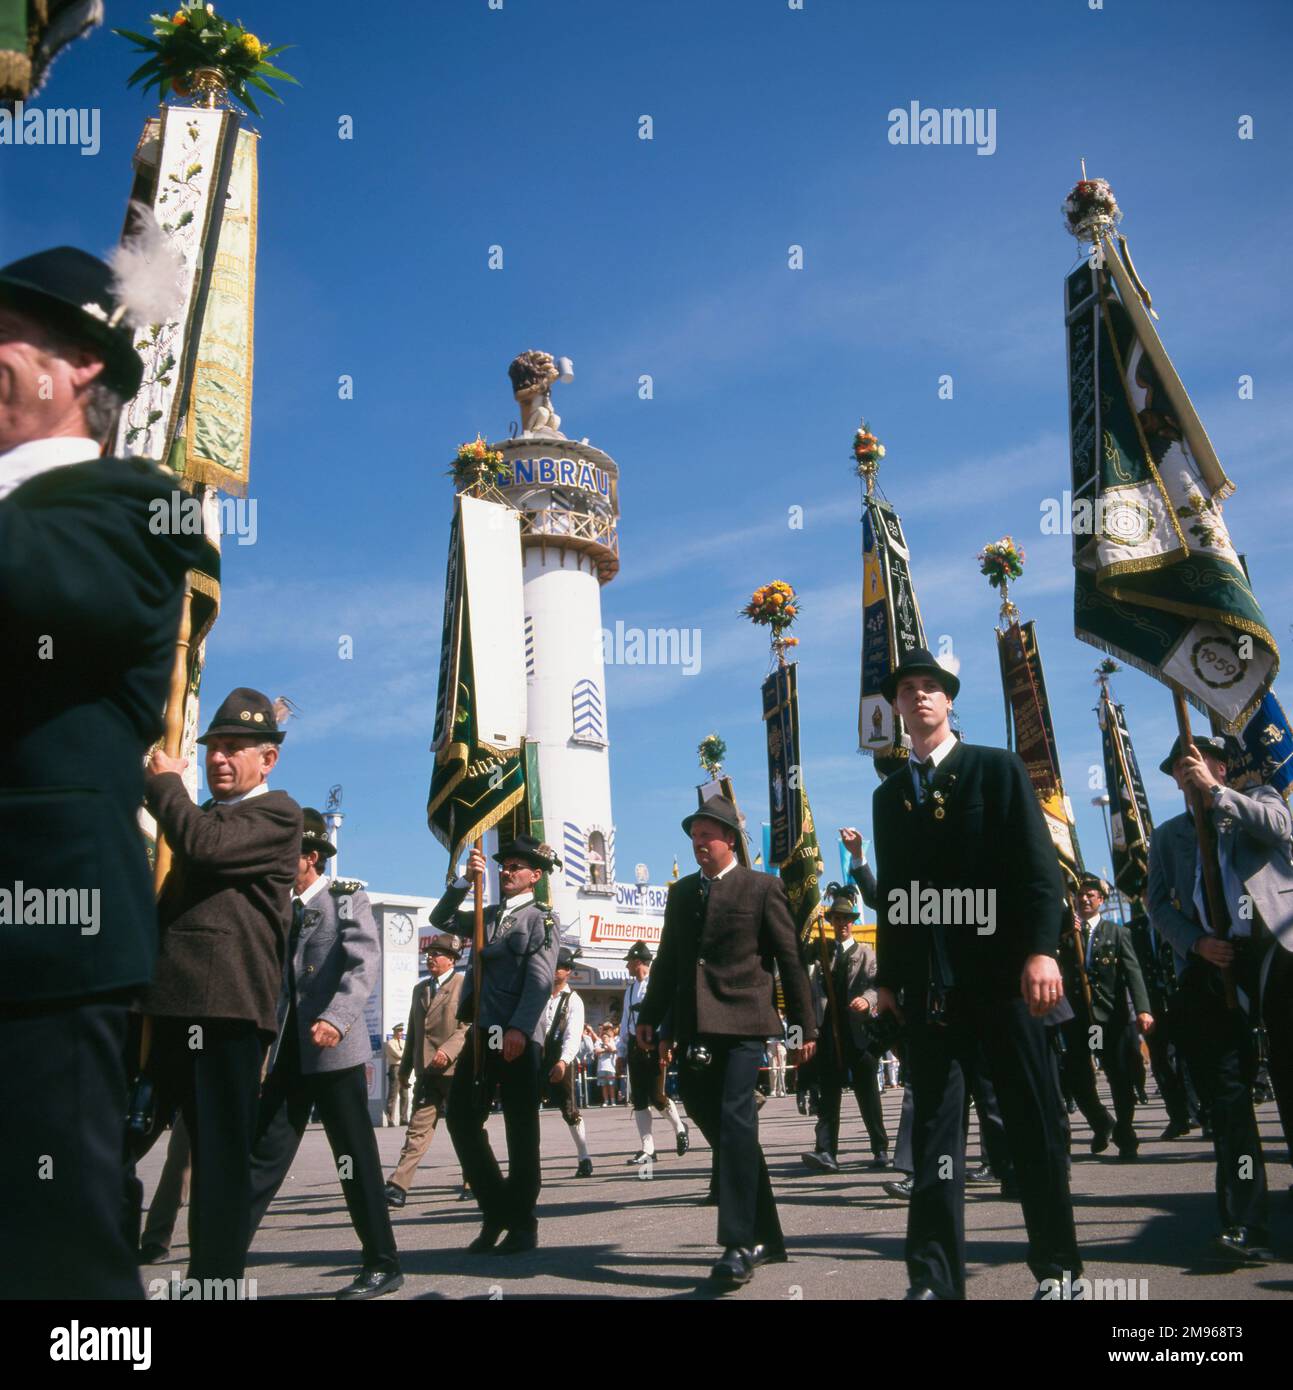 Scena all'Oktoberfest di Monaco, Germania, con persone in costume popolare che marciano con bandiere, e la torre della Lowenbrau Brewery sullo sfondo. Foto Stock